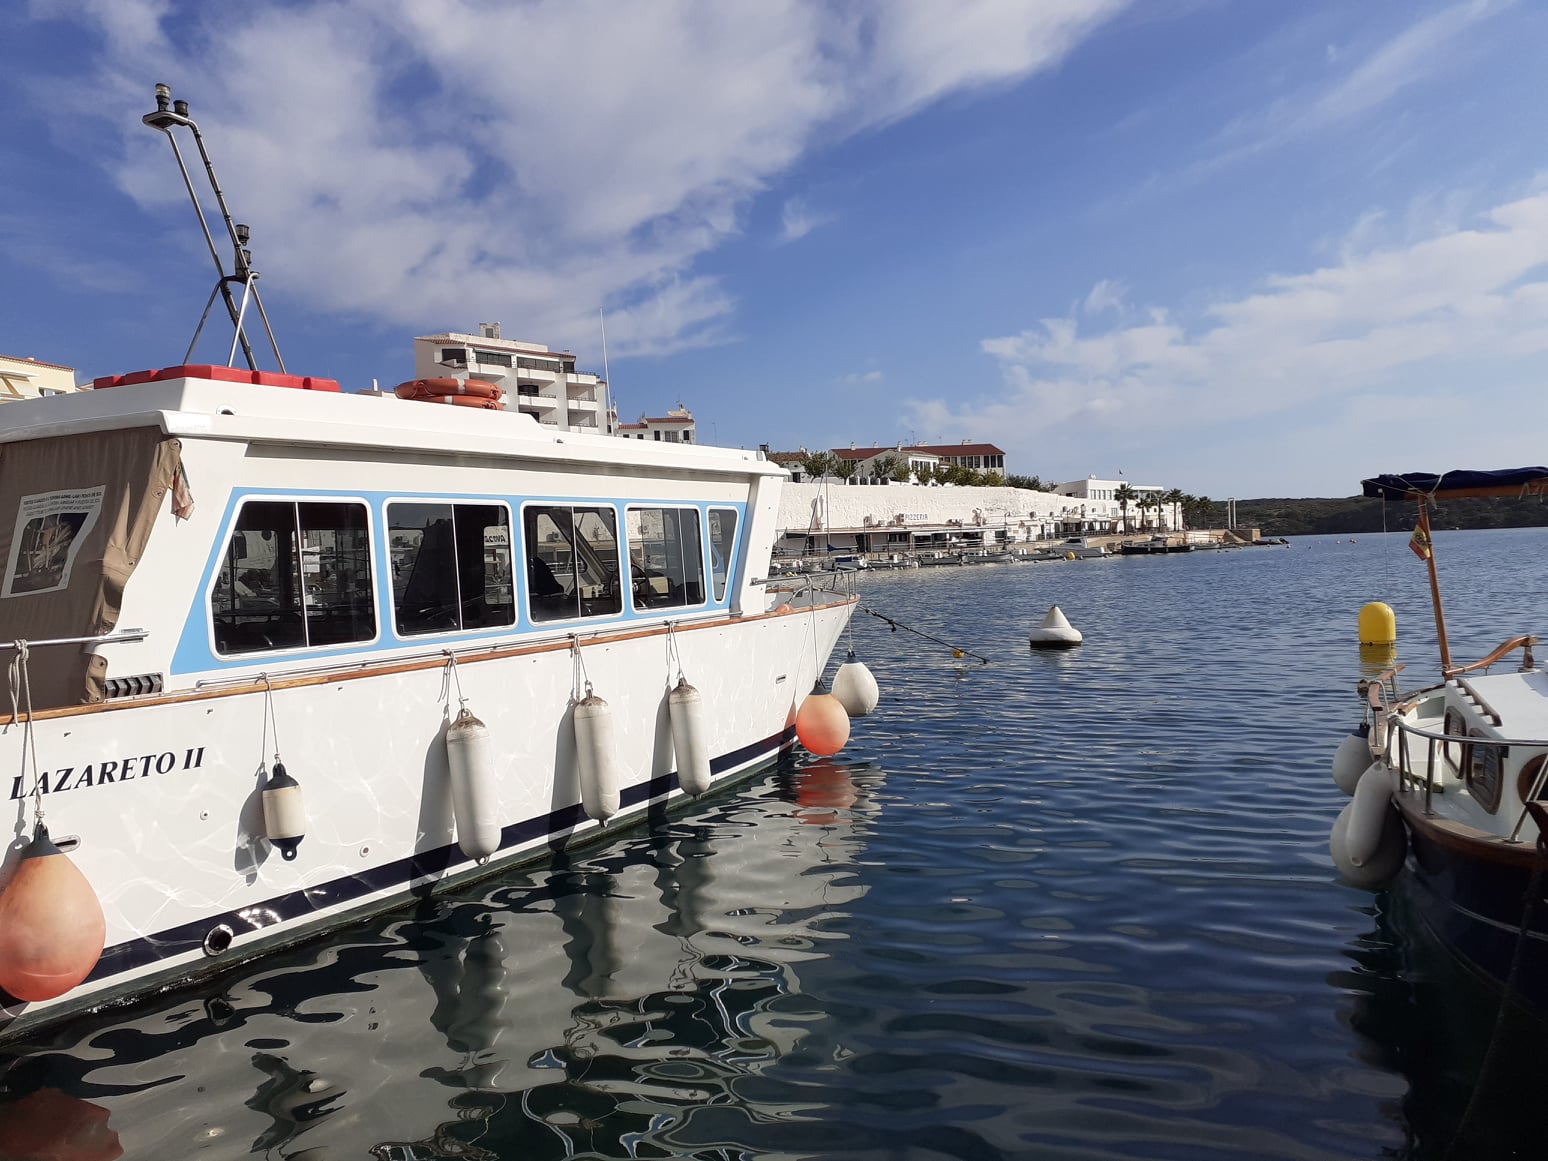 Barco para llegar a la isla Lazareto